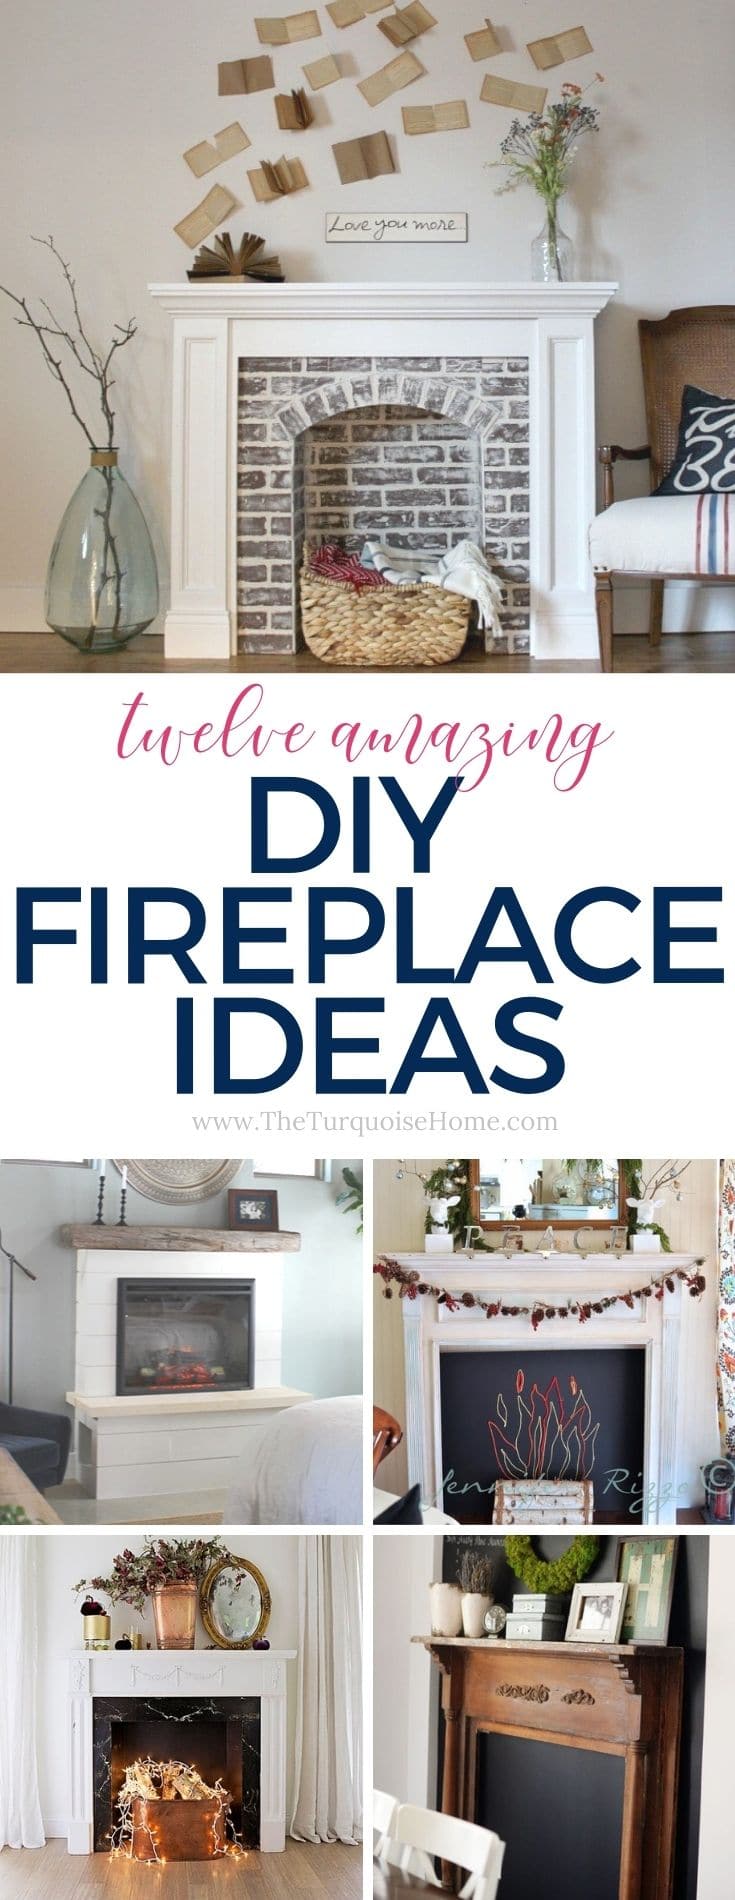 DIY Fireplace Ideas